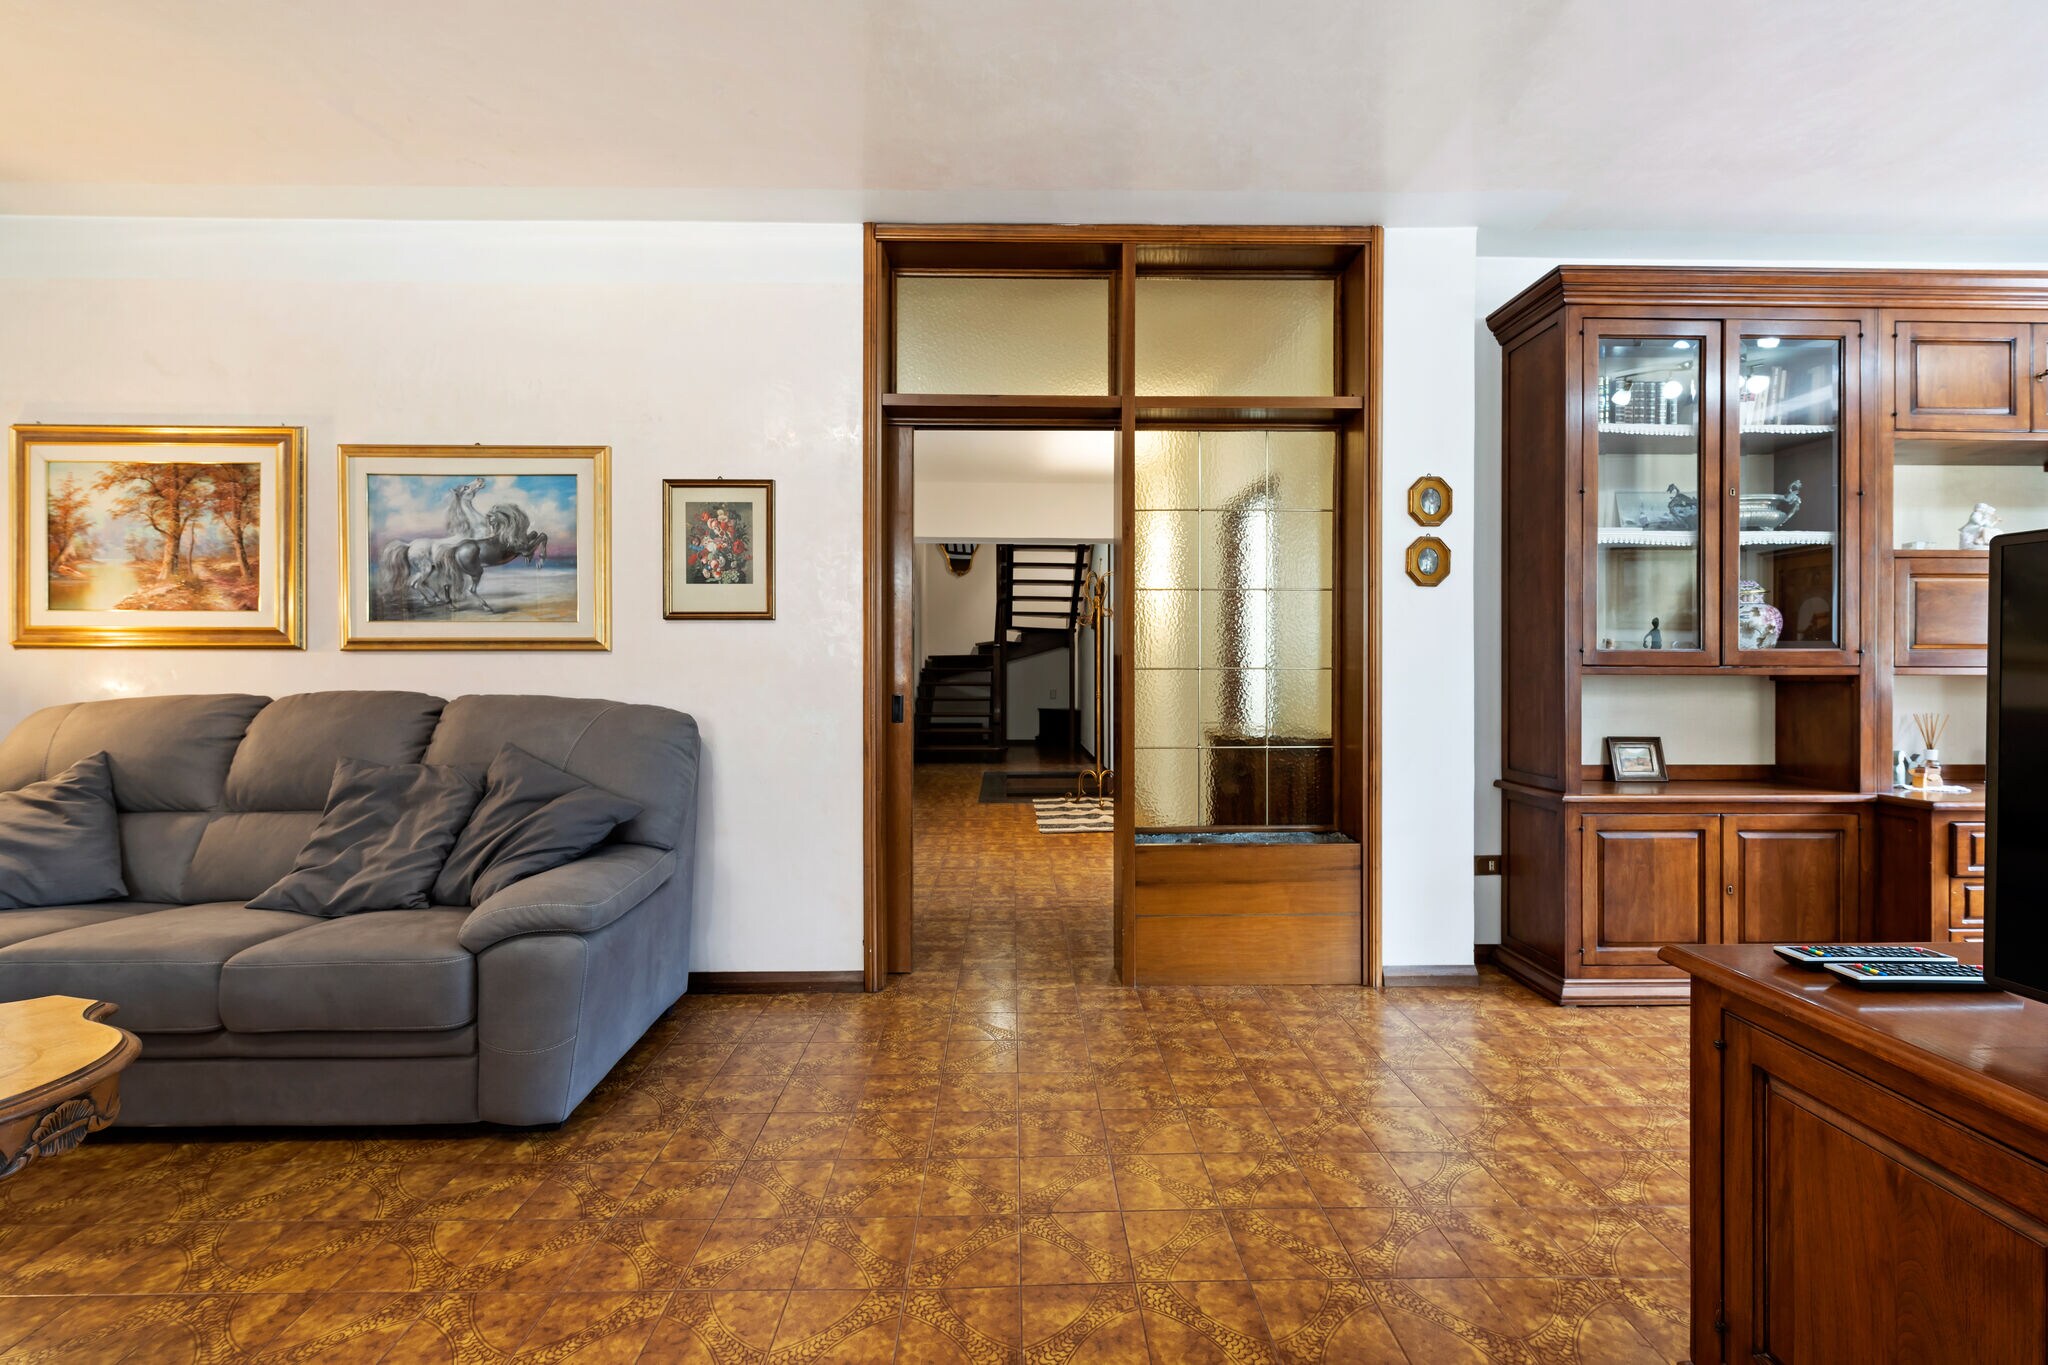 Appartement dichtbij centrum Predazzo, ideaal voor winter en zomer